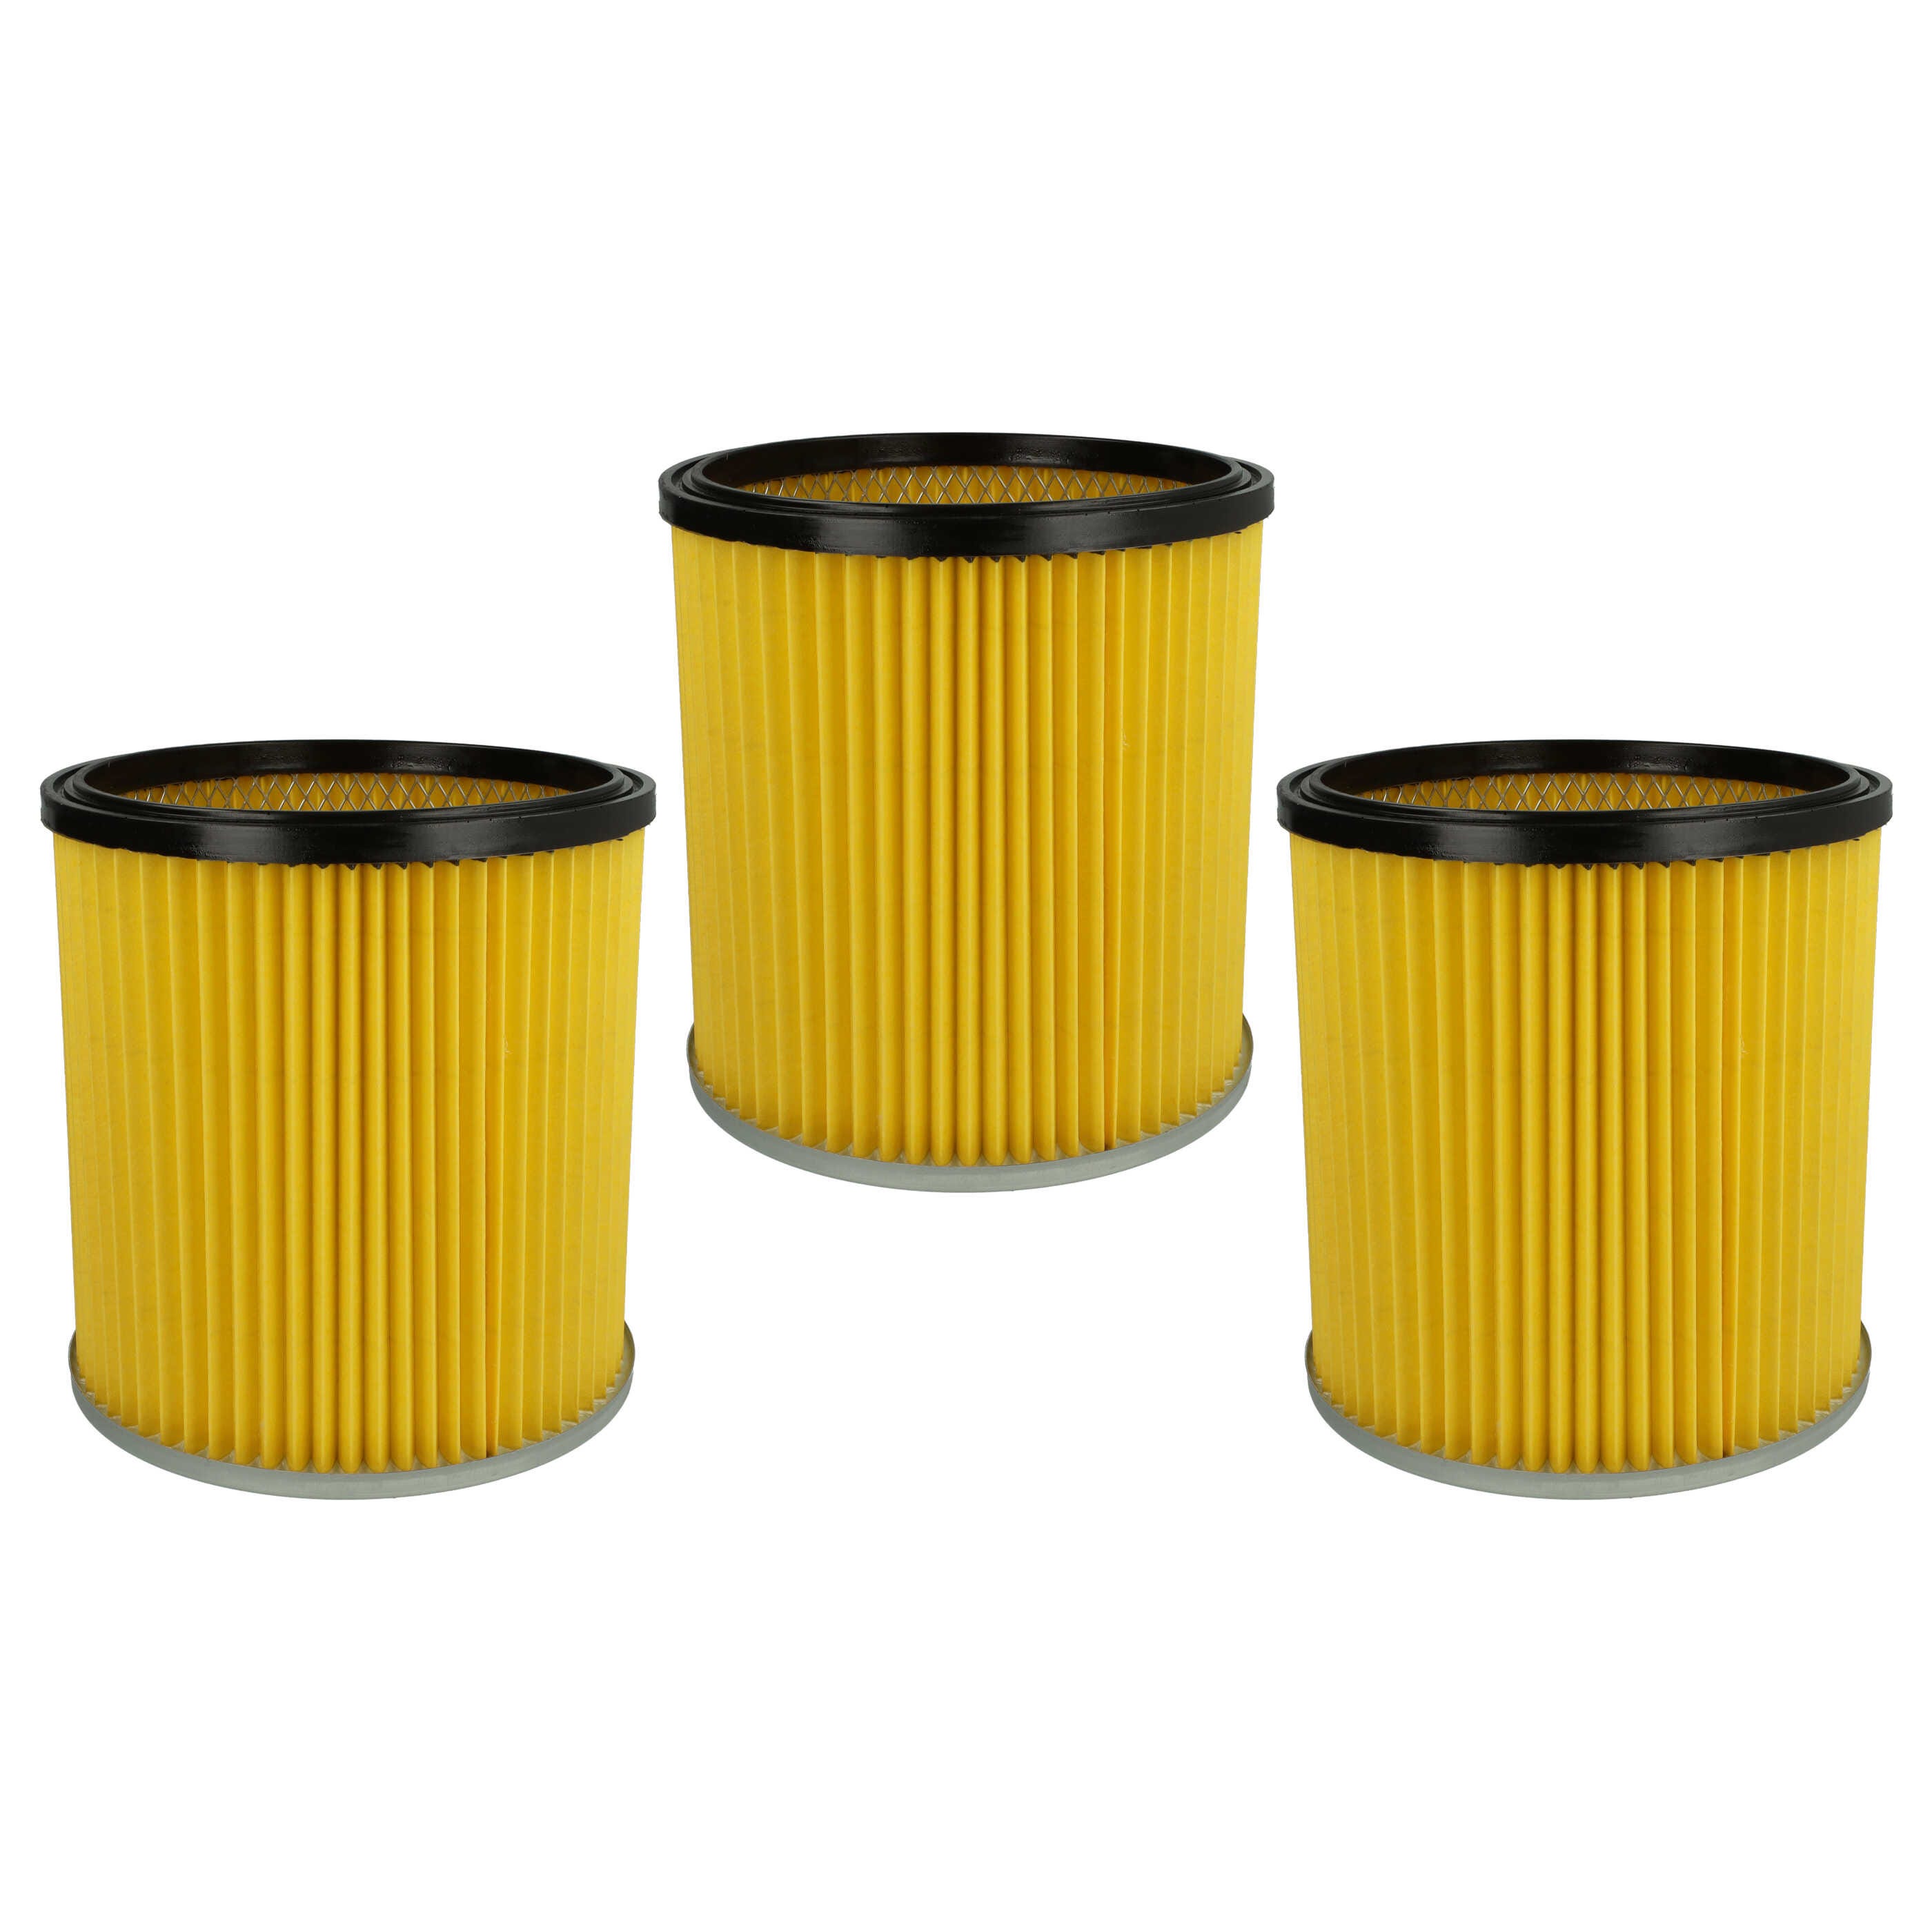 Vhbw Lot de 3x filtres à cartouche compatible avec Kärcher NT 351, NT 301  (1.722-121.0) aspirateur - Filtre plissé, papier